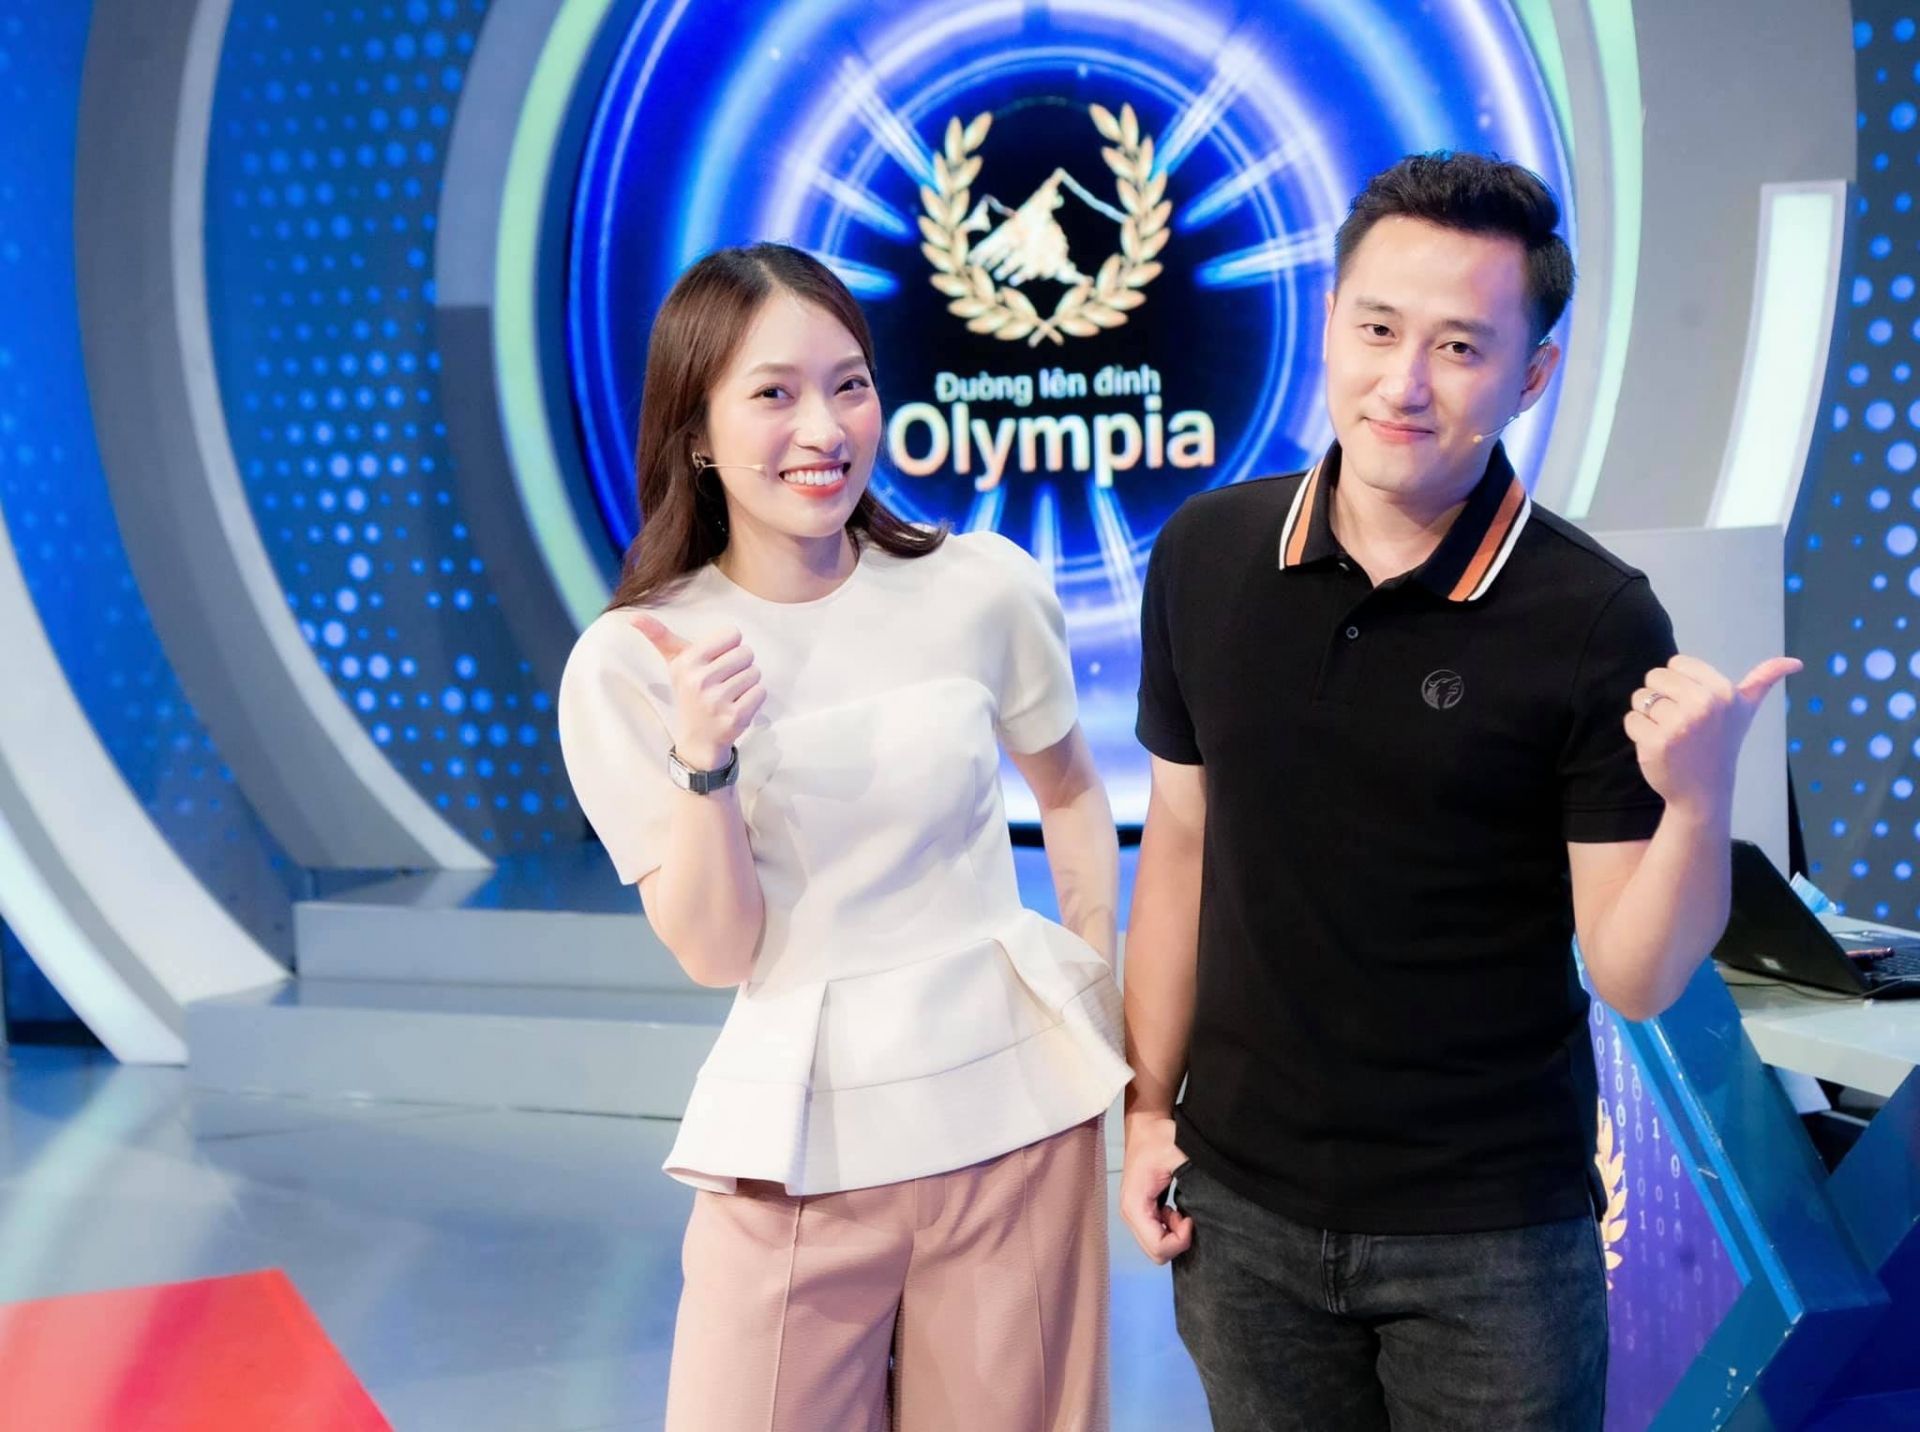 Đồng hành cùng Khánh Vy trong Olympia mùa mới, MC Ngọc Huy chỉ nói đúng 2 câu khiến ai cũng hóng ngày phát sóng - Ảnh 3